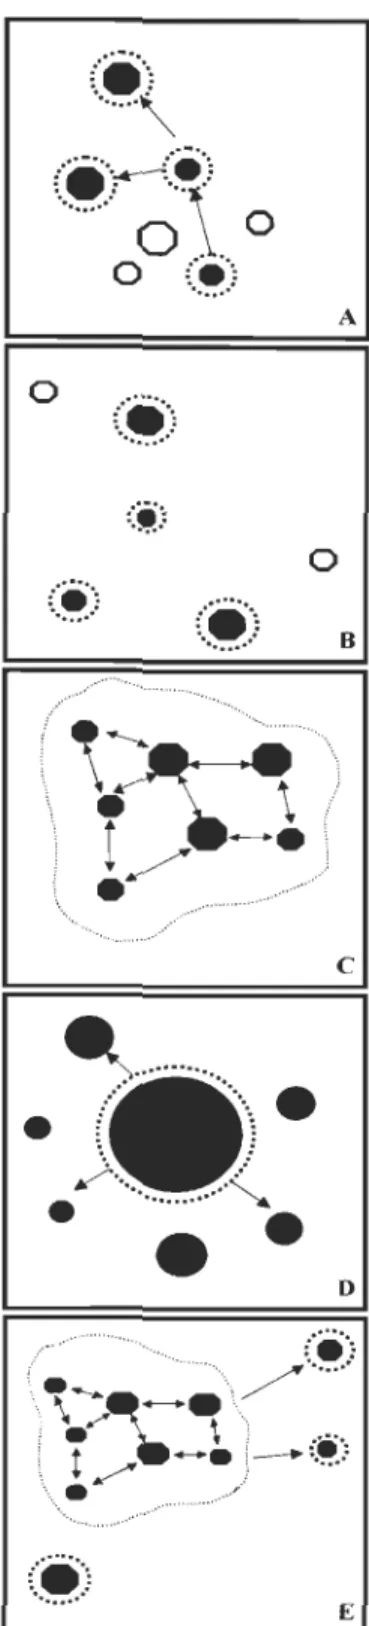 Figure  1  Différents  types  de  metapopulations  selon  Harrison  (1991)  : A  - metapopulation de  Levins; B - metapopulation centre-satellite; C - metapopulation fragmentée; D - metapopulation  non équilibrée; E - metapopulation mixte (modèle mixte ent